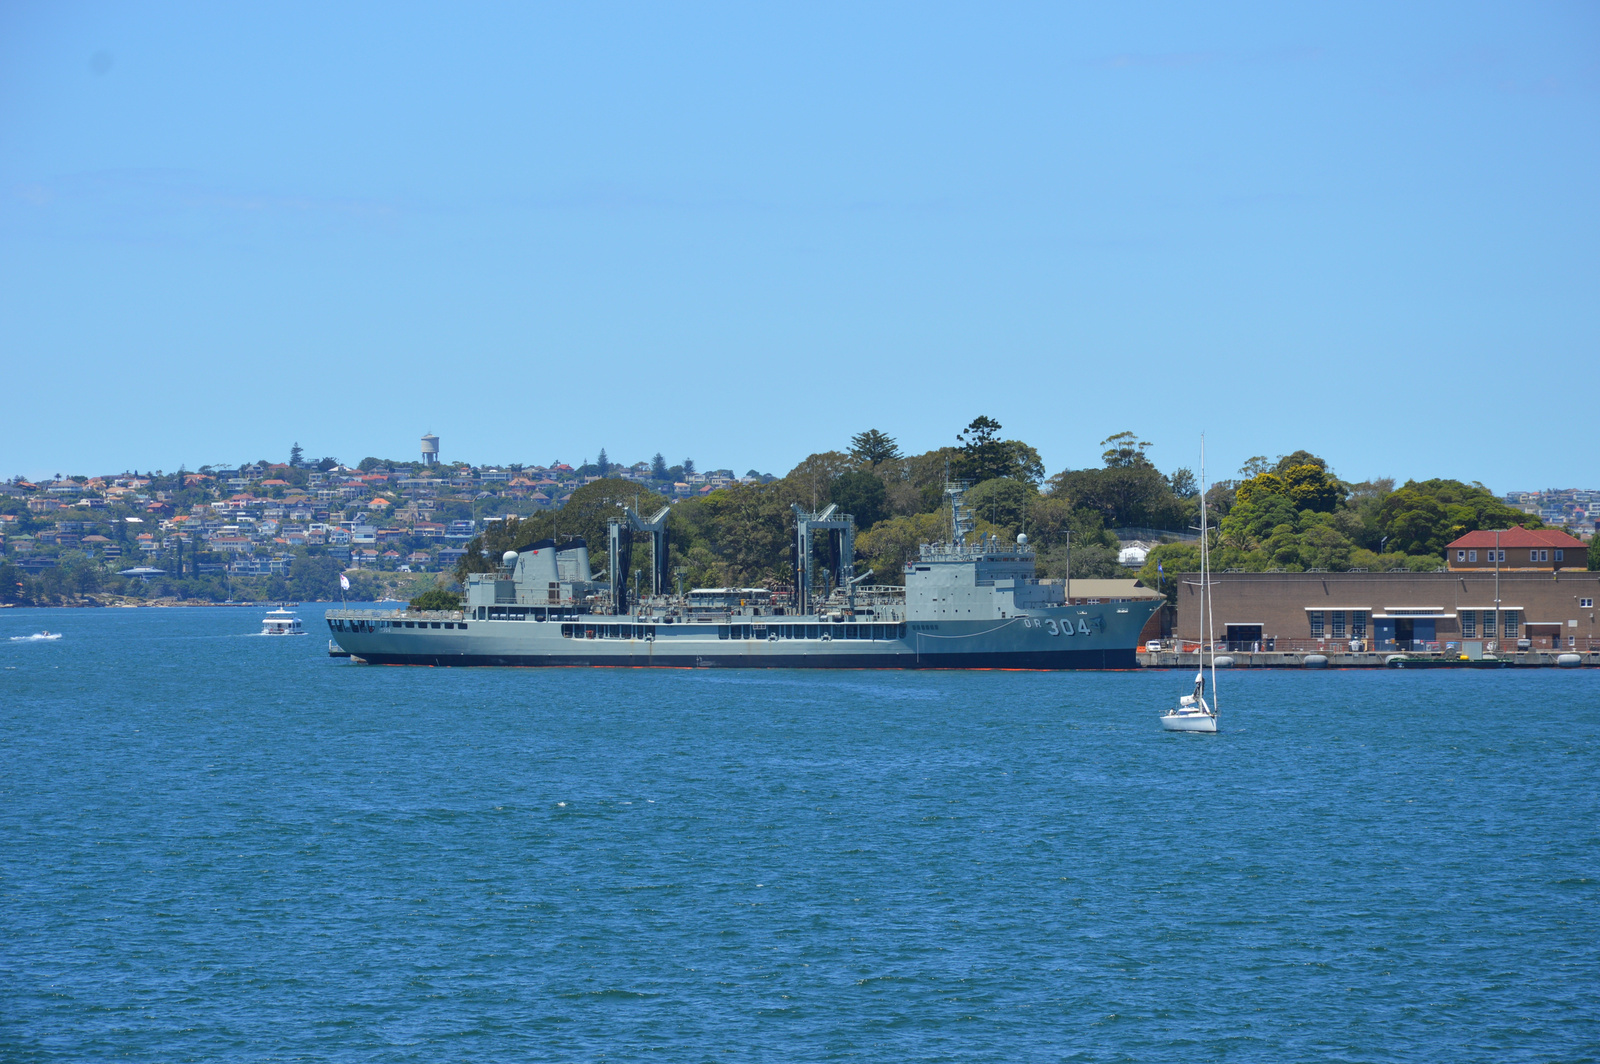 Sydney HMAS Success